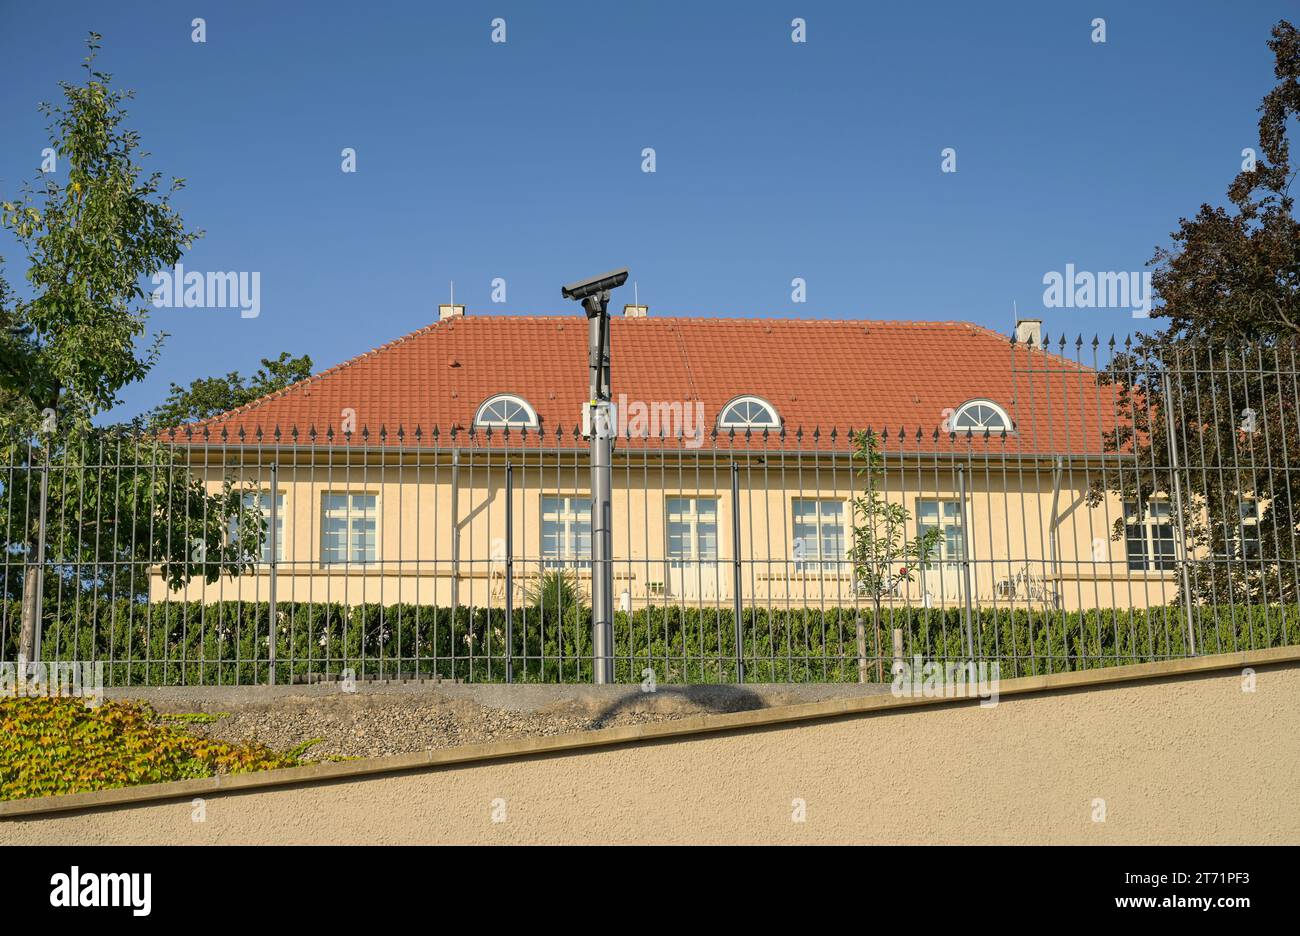 Clay Haus der Villa Reitzenstein, Amtssitz Staatsministerium Baden-Württemberg und des amtierenden Ministerpräsidenten, Richard-Wagner-Straße, Stuttga Stock Photo